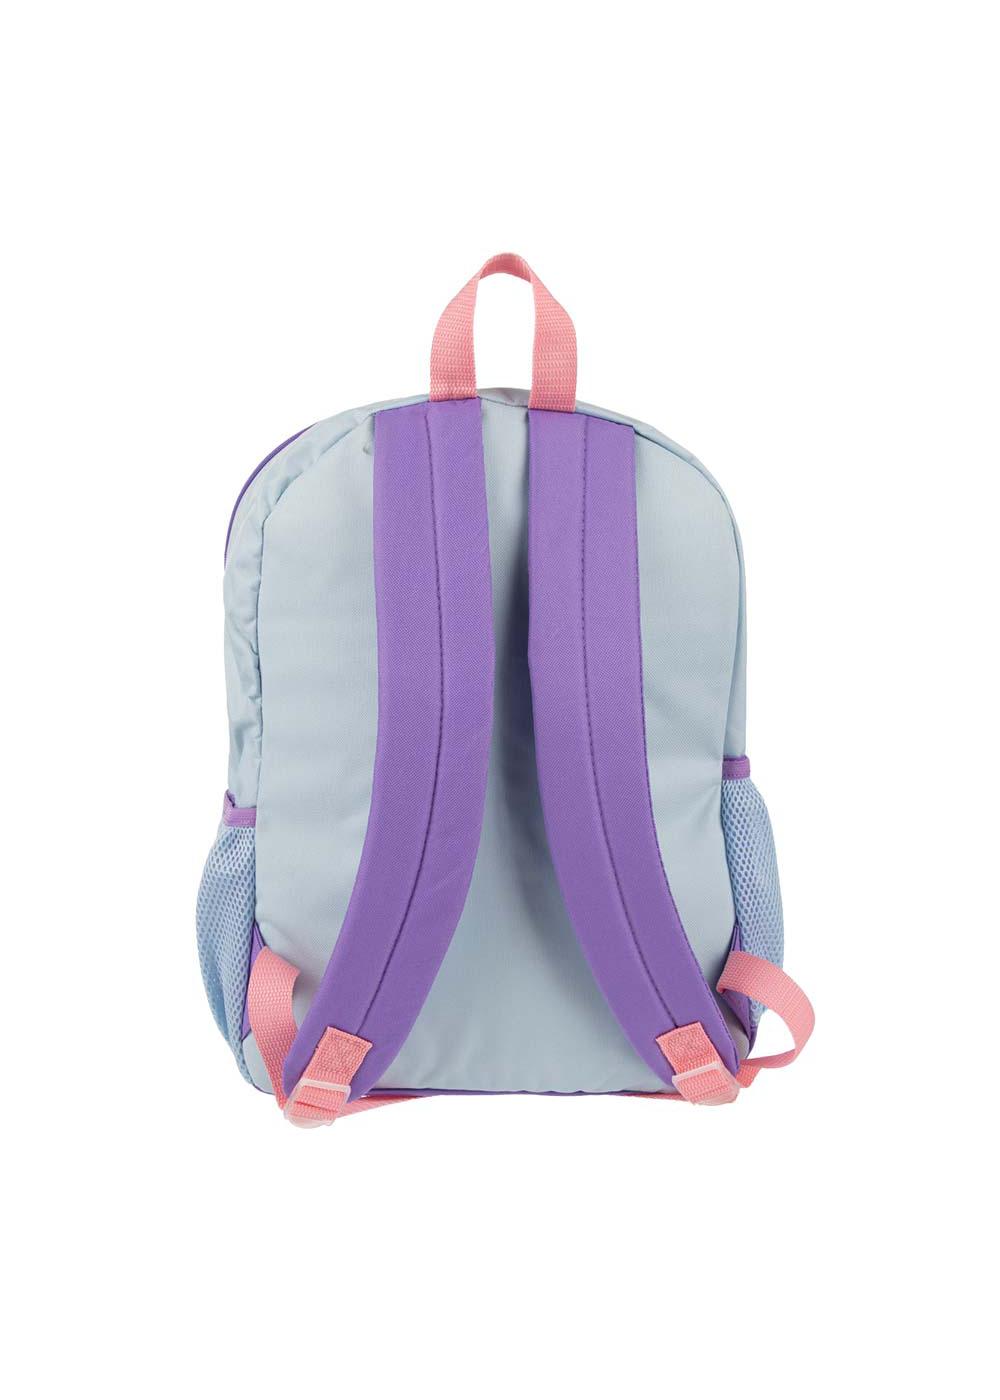 Bioworld Disney's Frozen Kids Backpack Set - Shop Backpacks at H-E-B